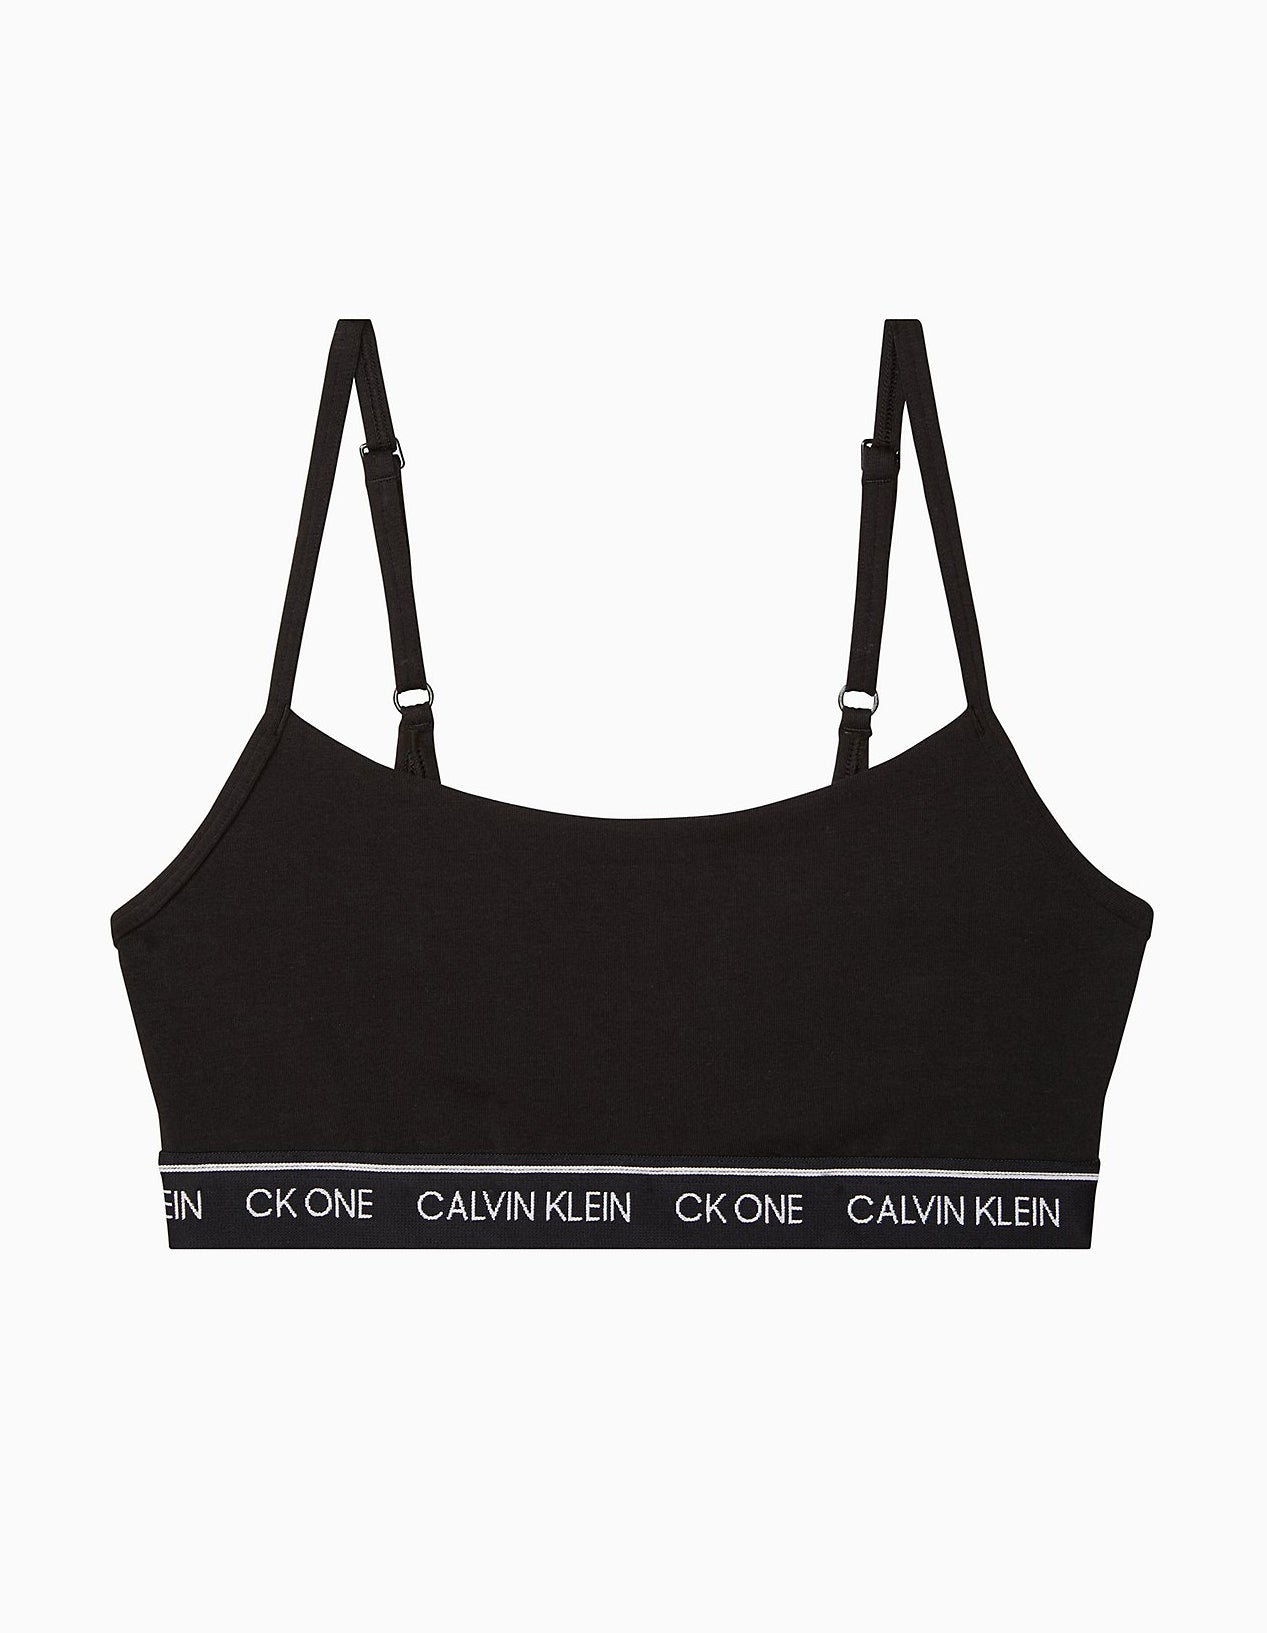 Calvin Klein CK ONE Unlined Bralette – OADUS